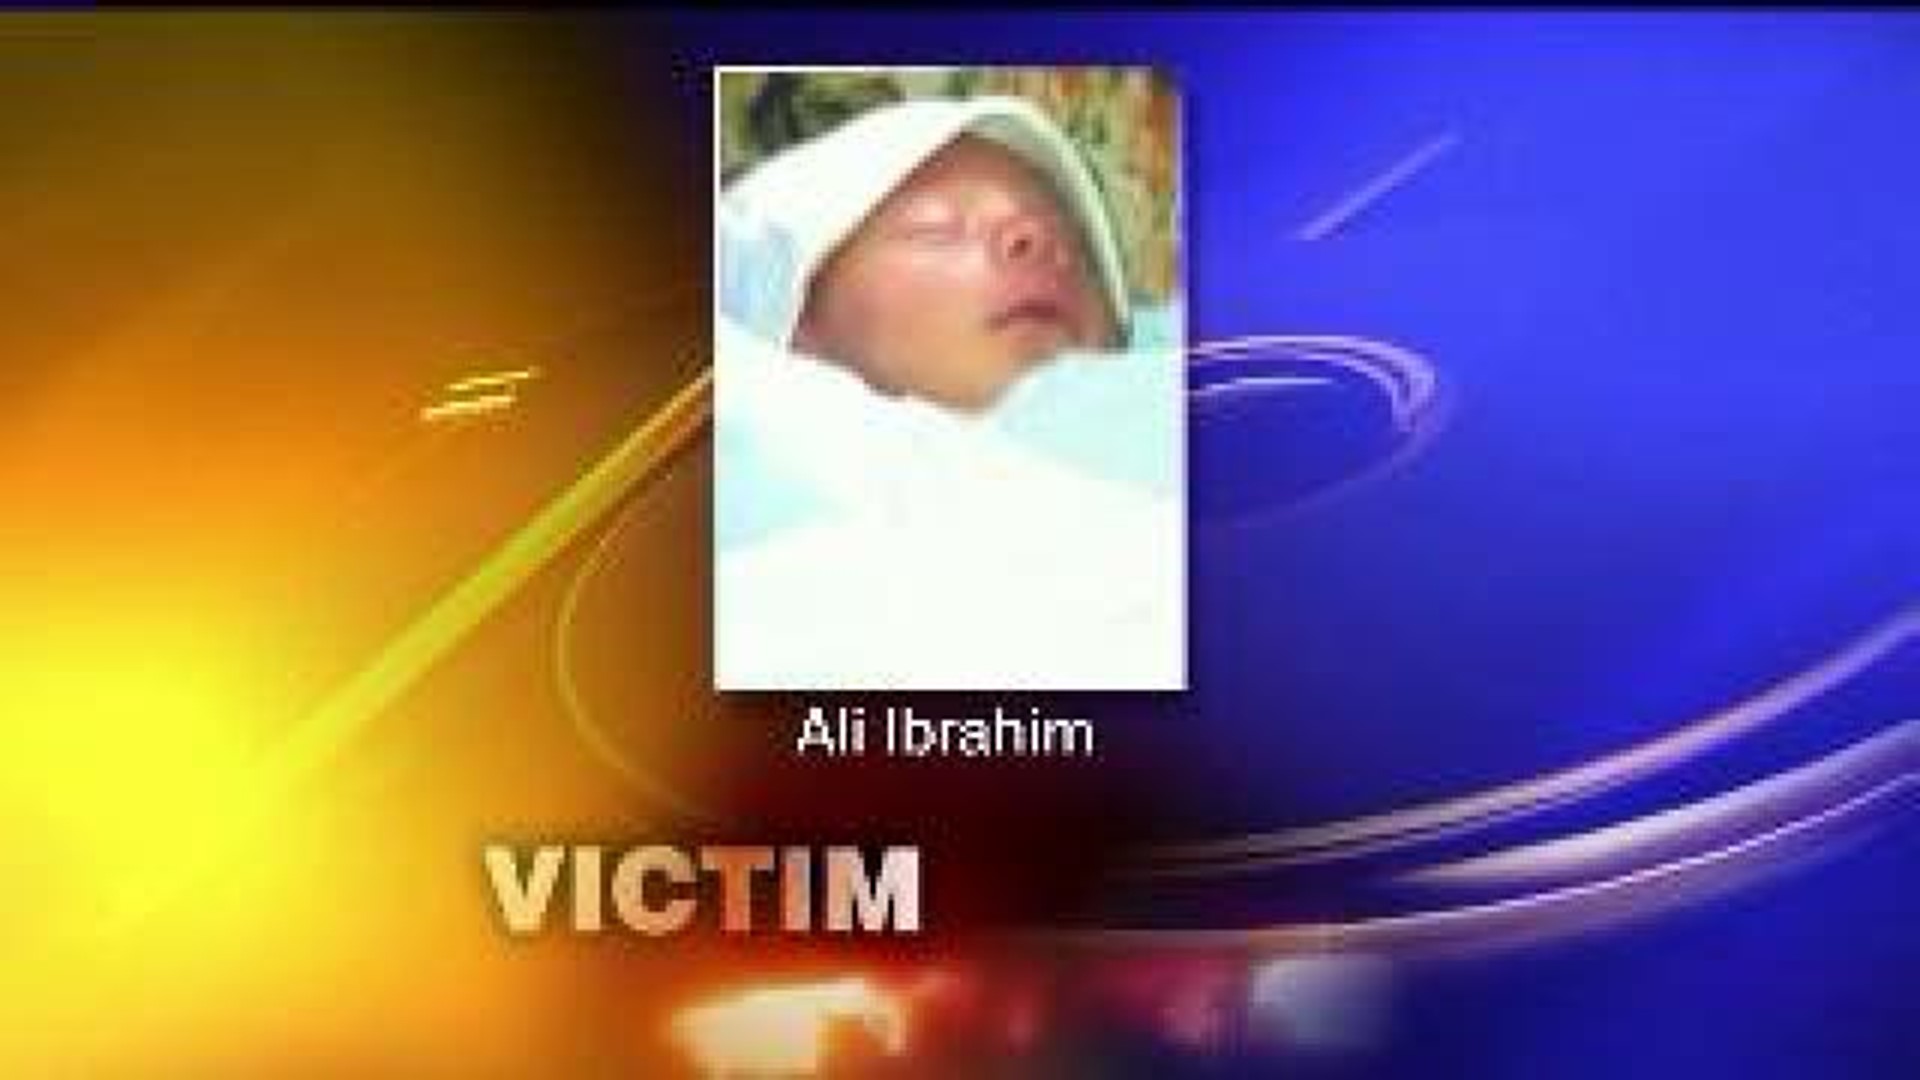 Man Arrested for Alleged Infant Assault